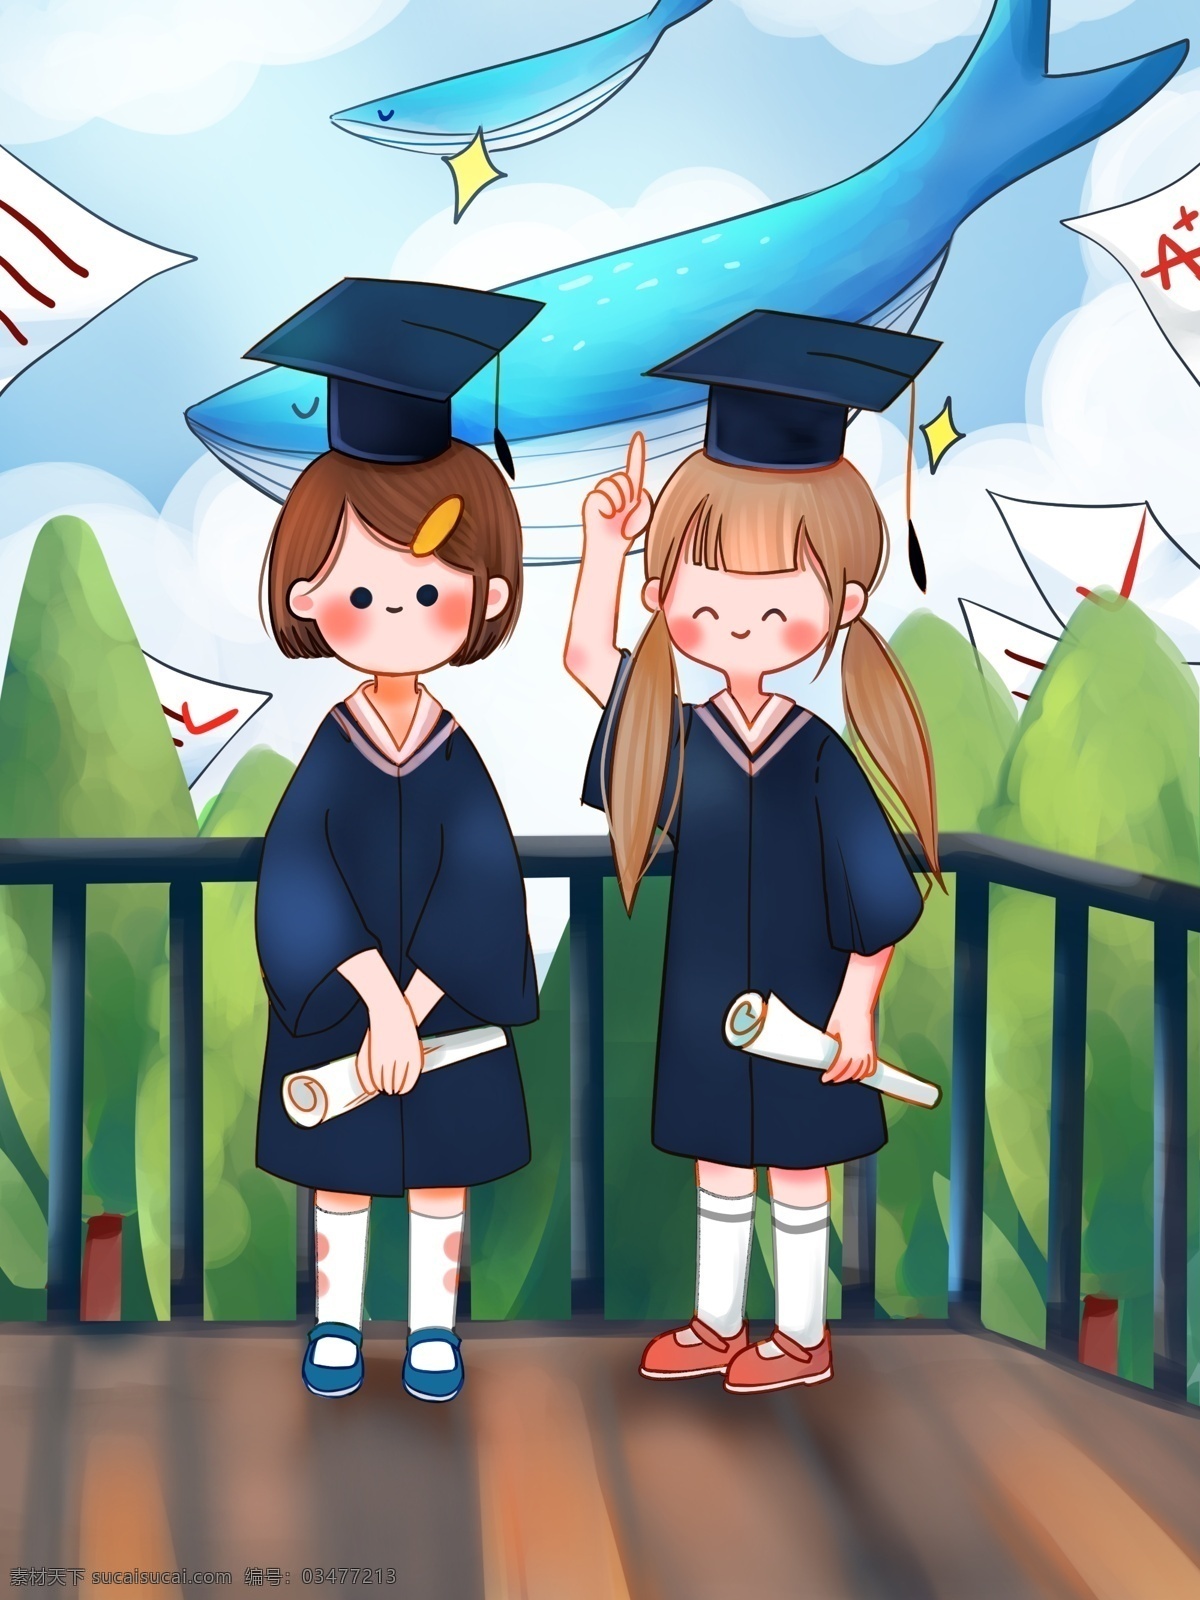 青春 再见 我们 毕业 学生 开心 拍照 梦想 鲸鱼 插画 可爱 女孩 卡通